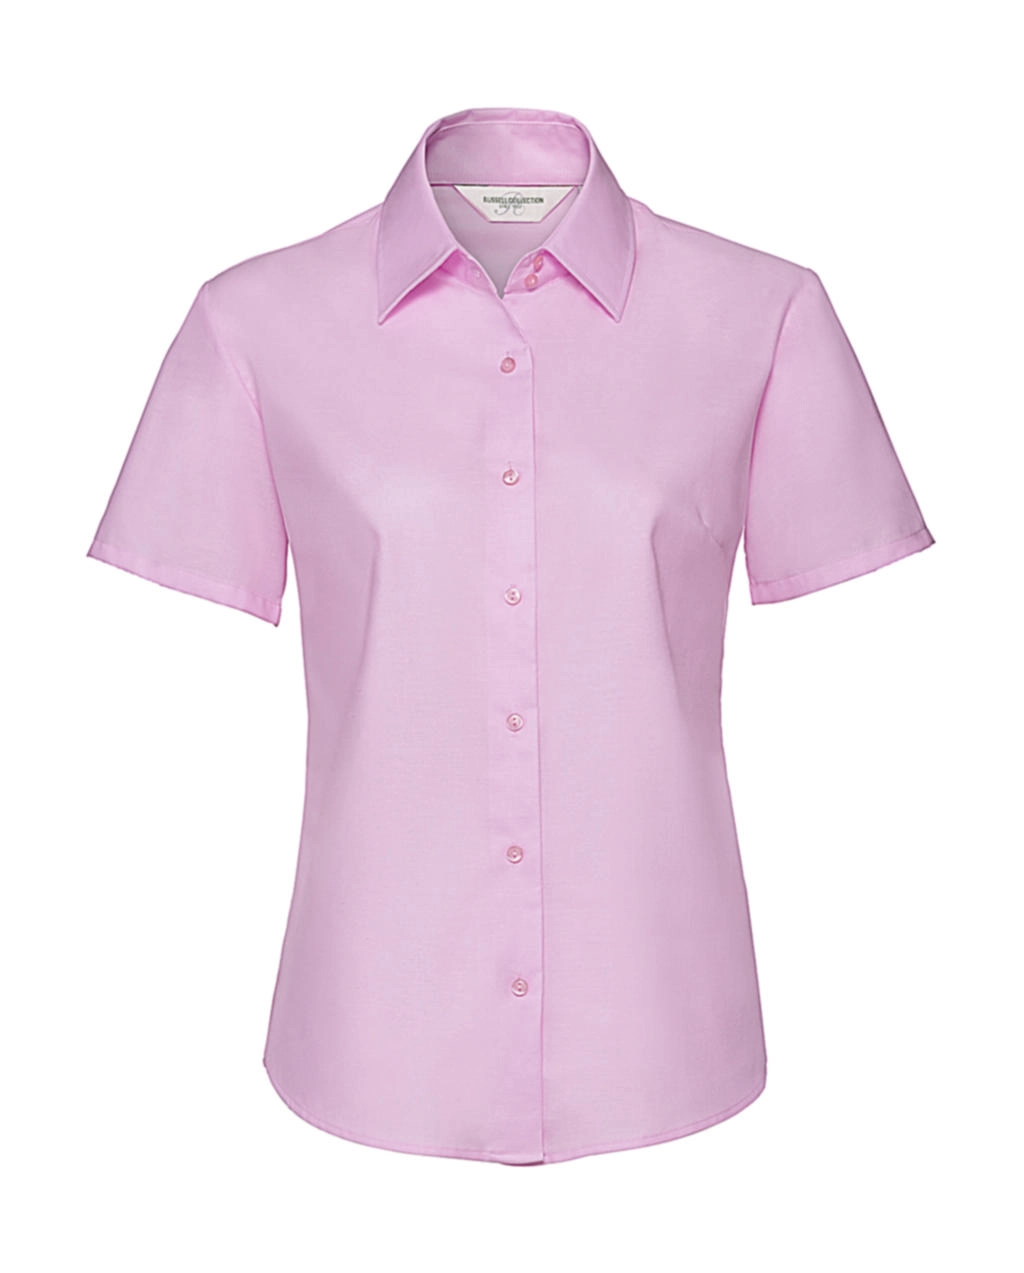 Ladies` Classic Oxford Shirt zum Besticken und Bedrucken in der Farbe Classic Pink mit Ihren Logo, Schriftzug oder Motiv.